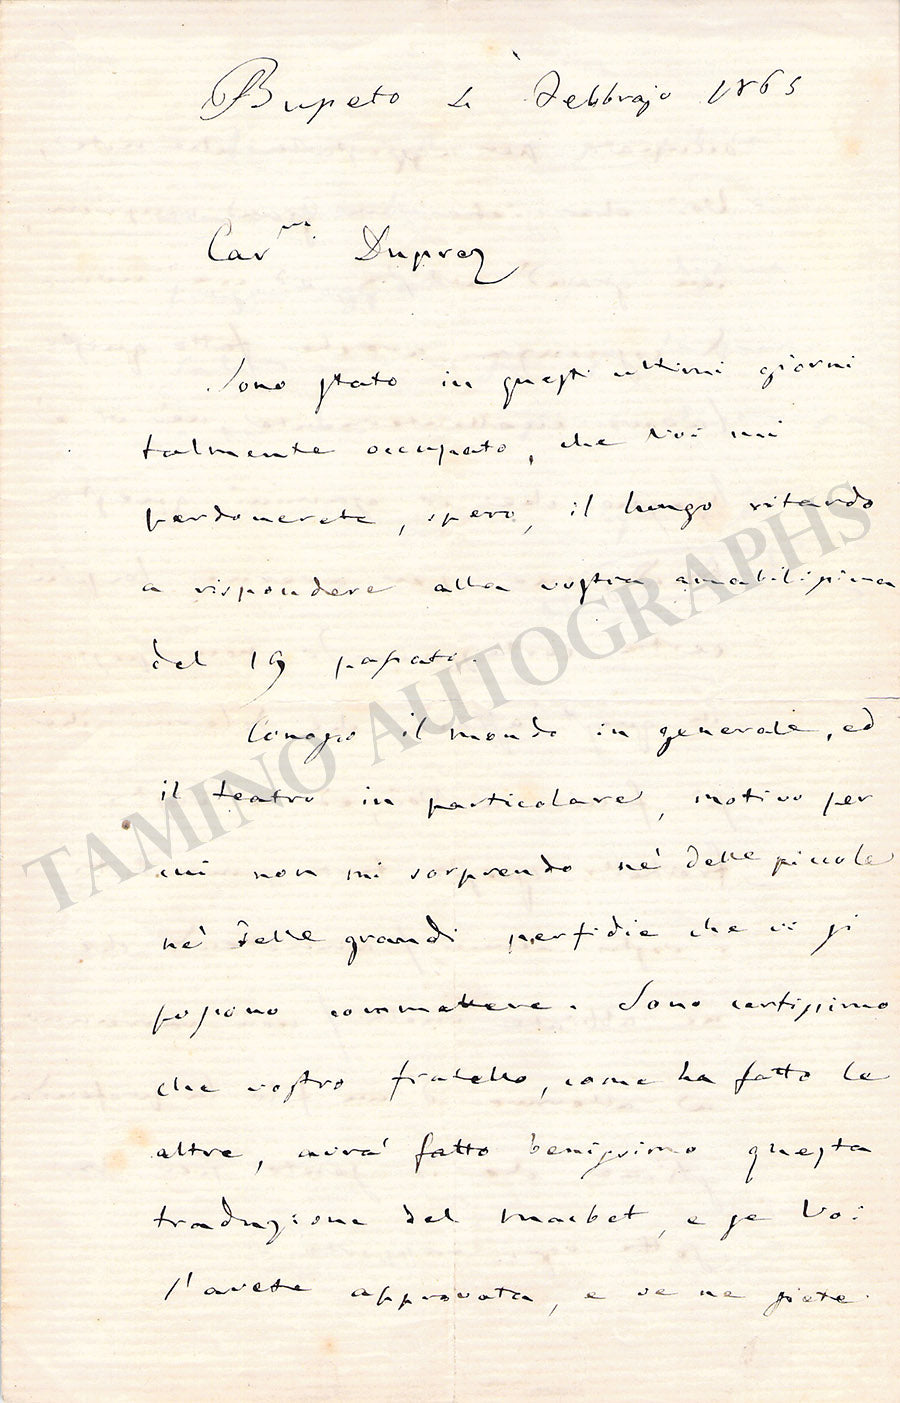 Verdi, Giuseppe - Autograph Letter Signed 1865